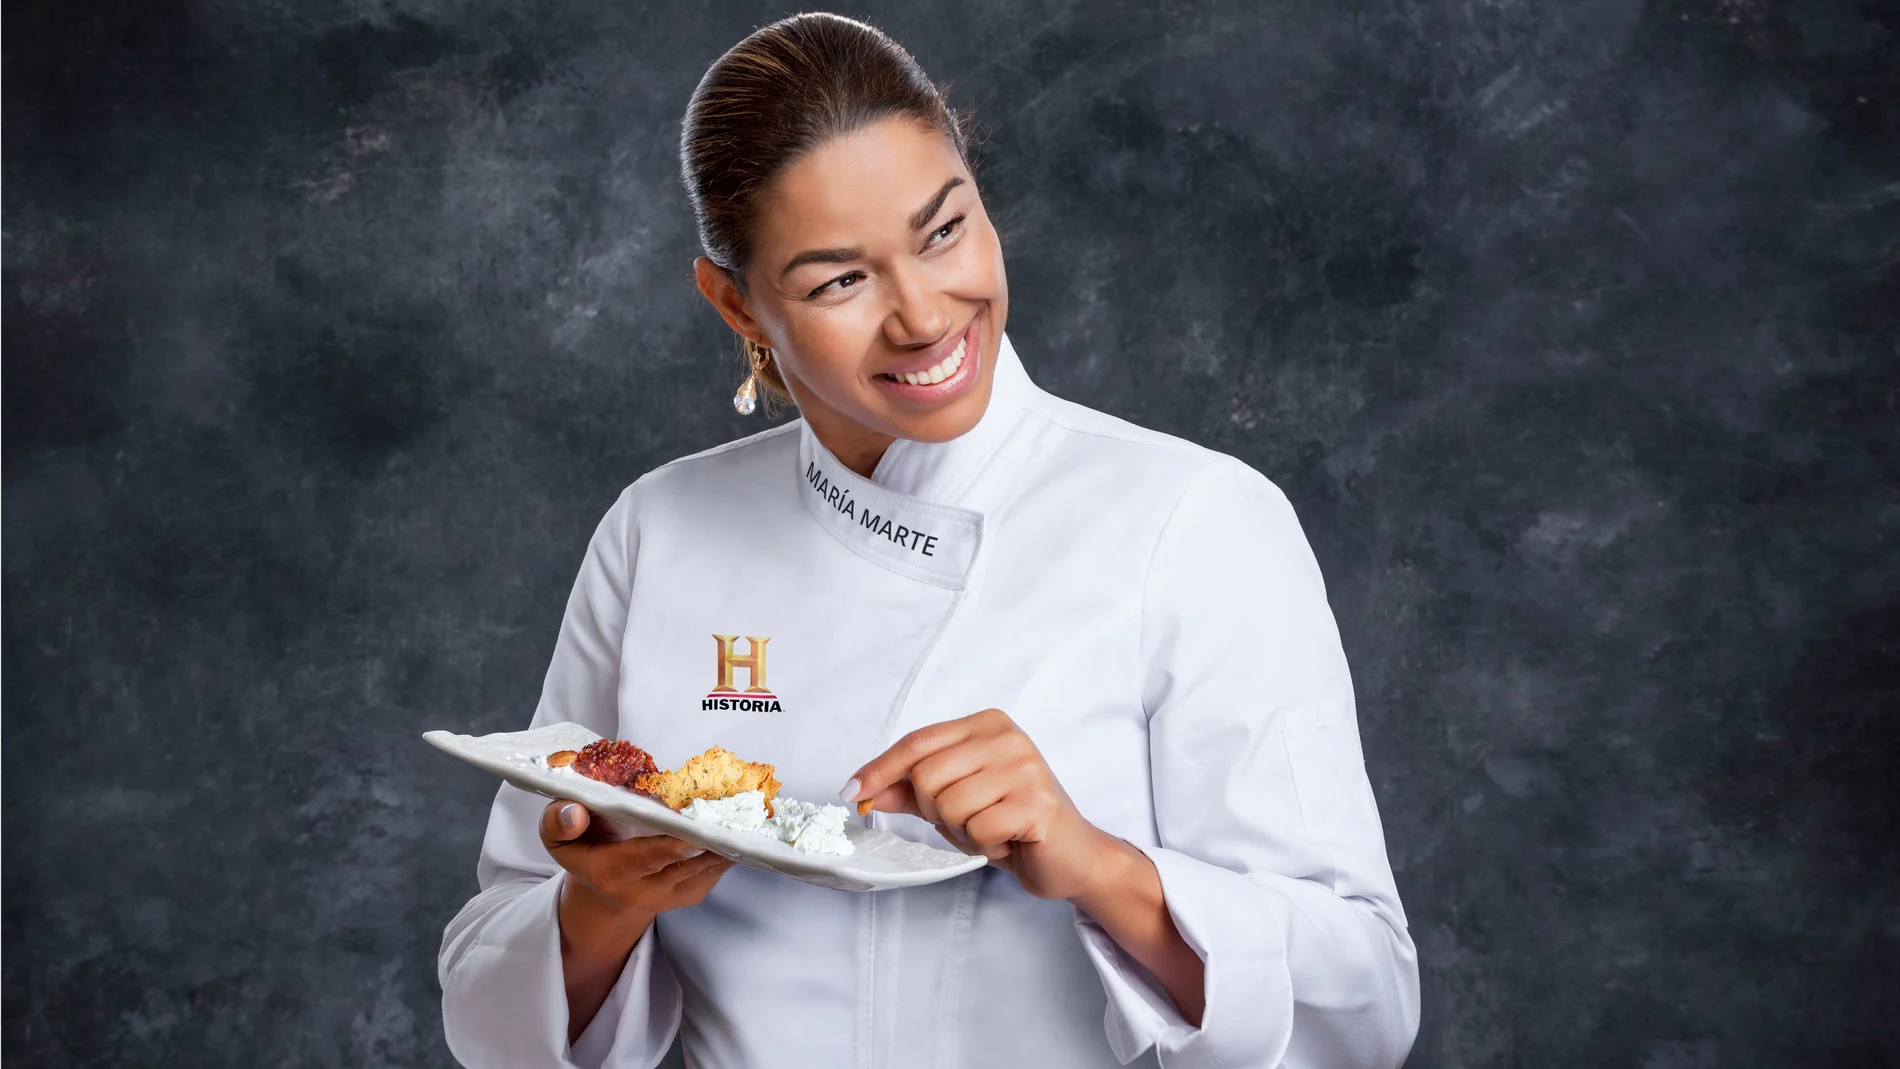 La chef María Marte mantuvo dos estrellas Michelín en el Club Allard y recibió el Premio Nacional de Gastronomía en 2015